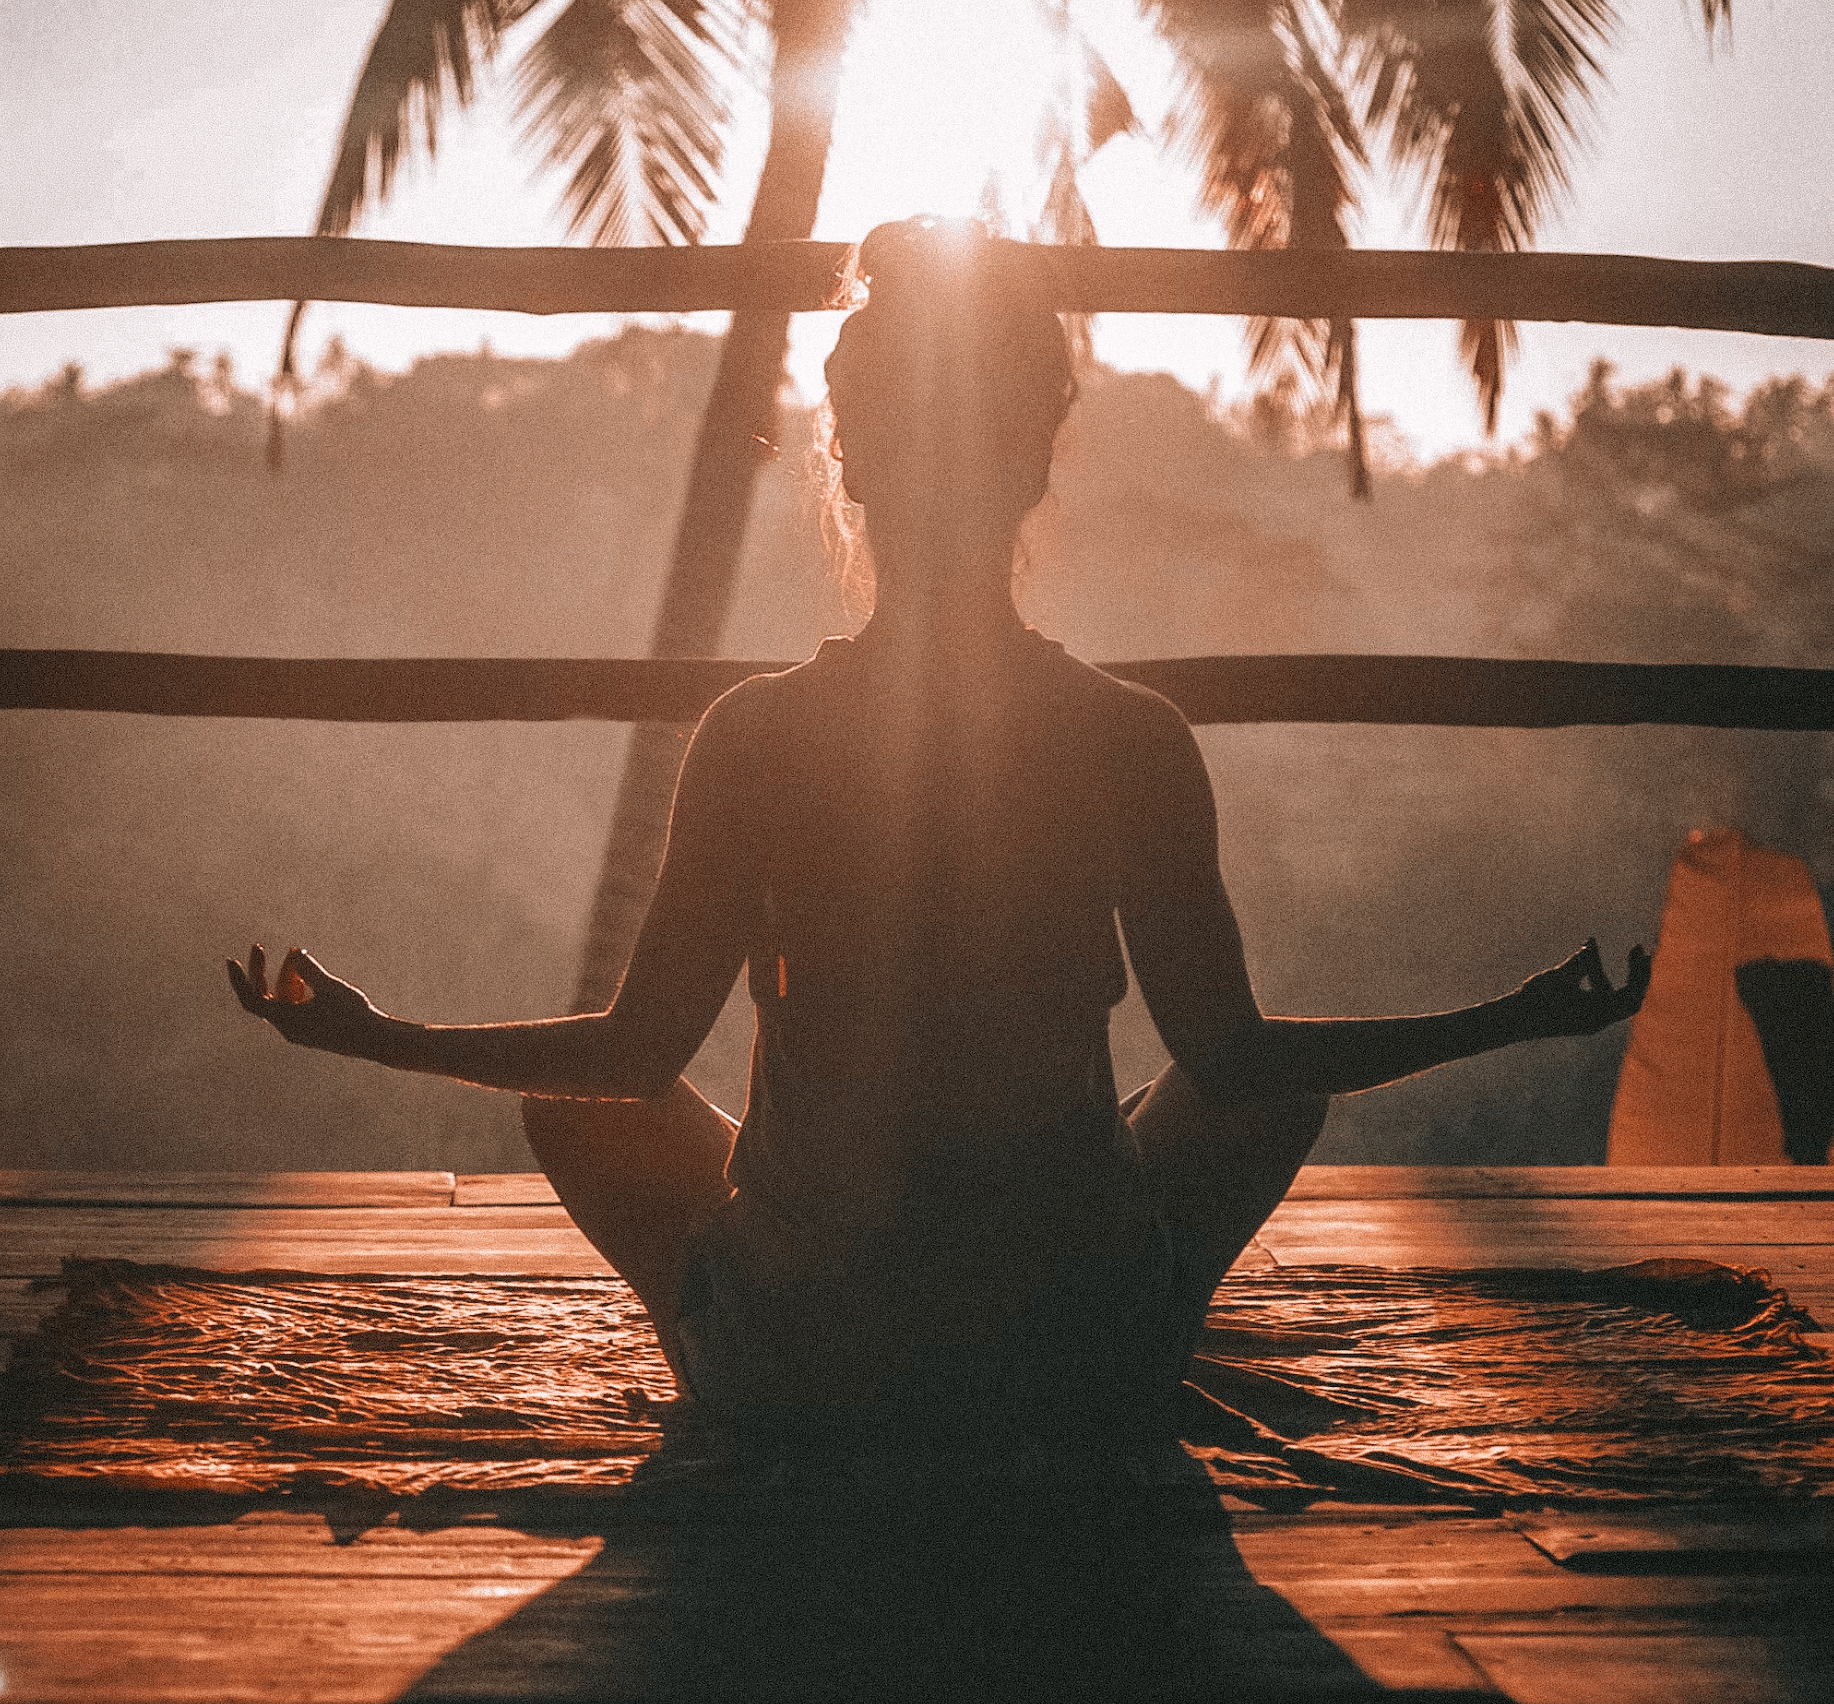 Le yoga : une pratique millénaire pour renforcer le corps et l'esprit.